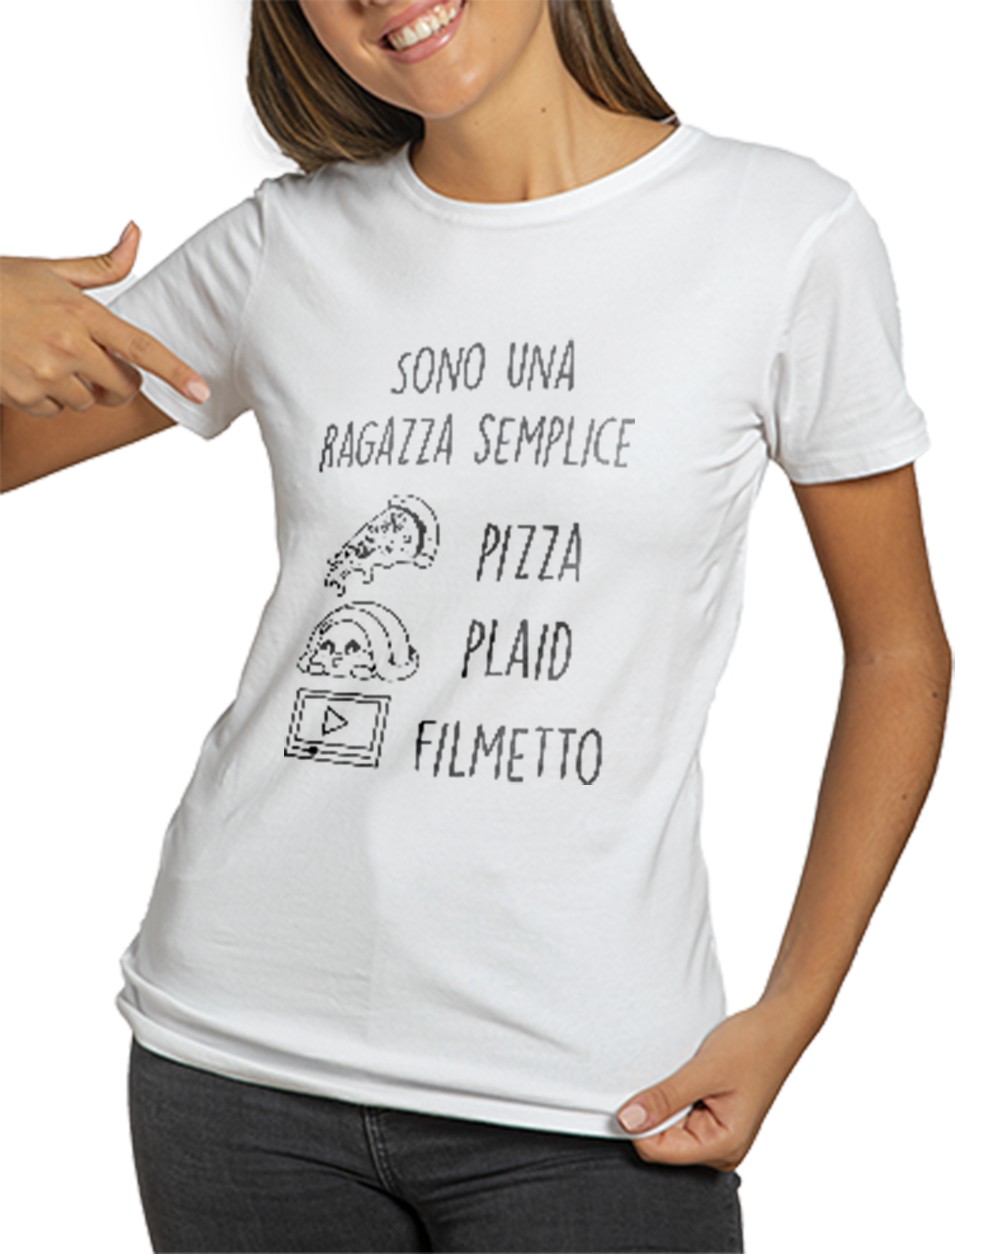 T-Shirt Donna RAGAZZA SEMPLICE